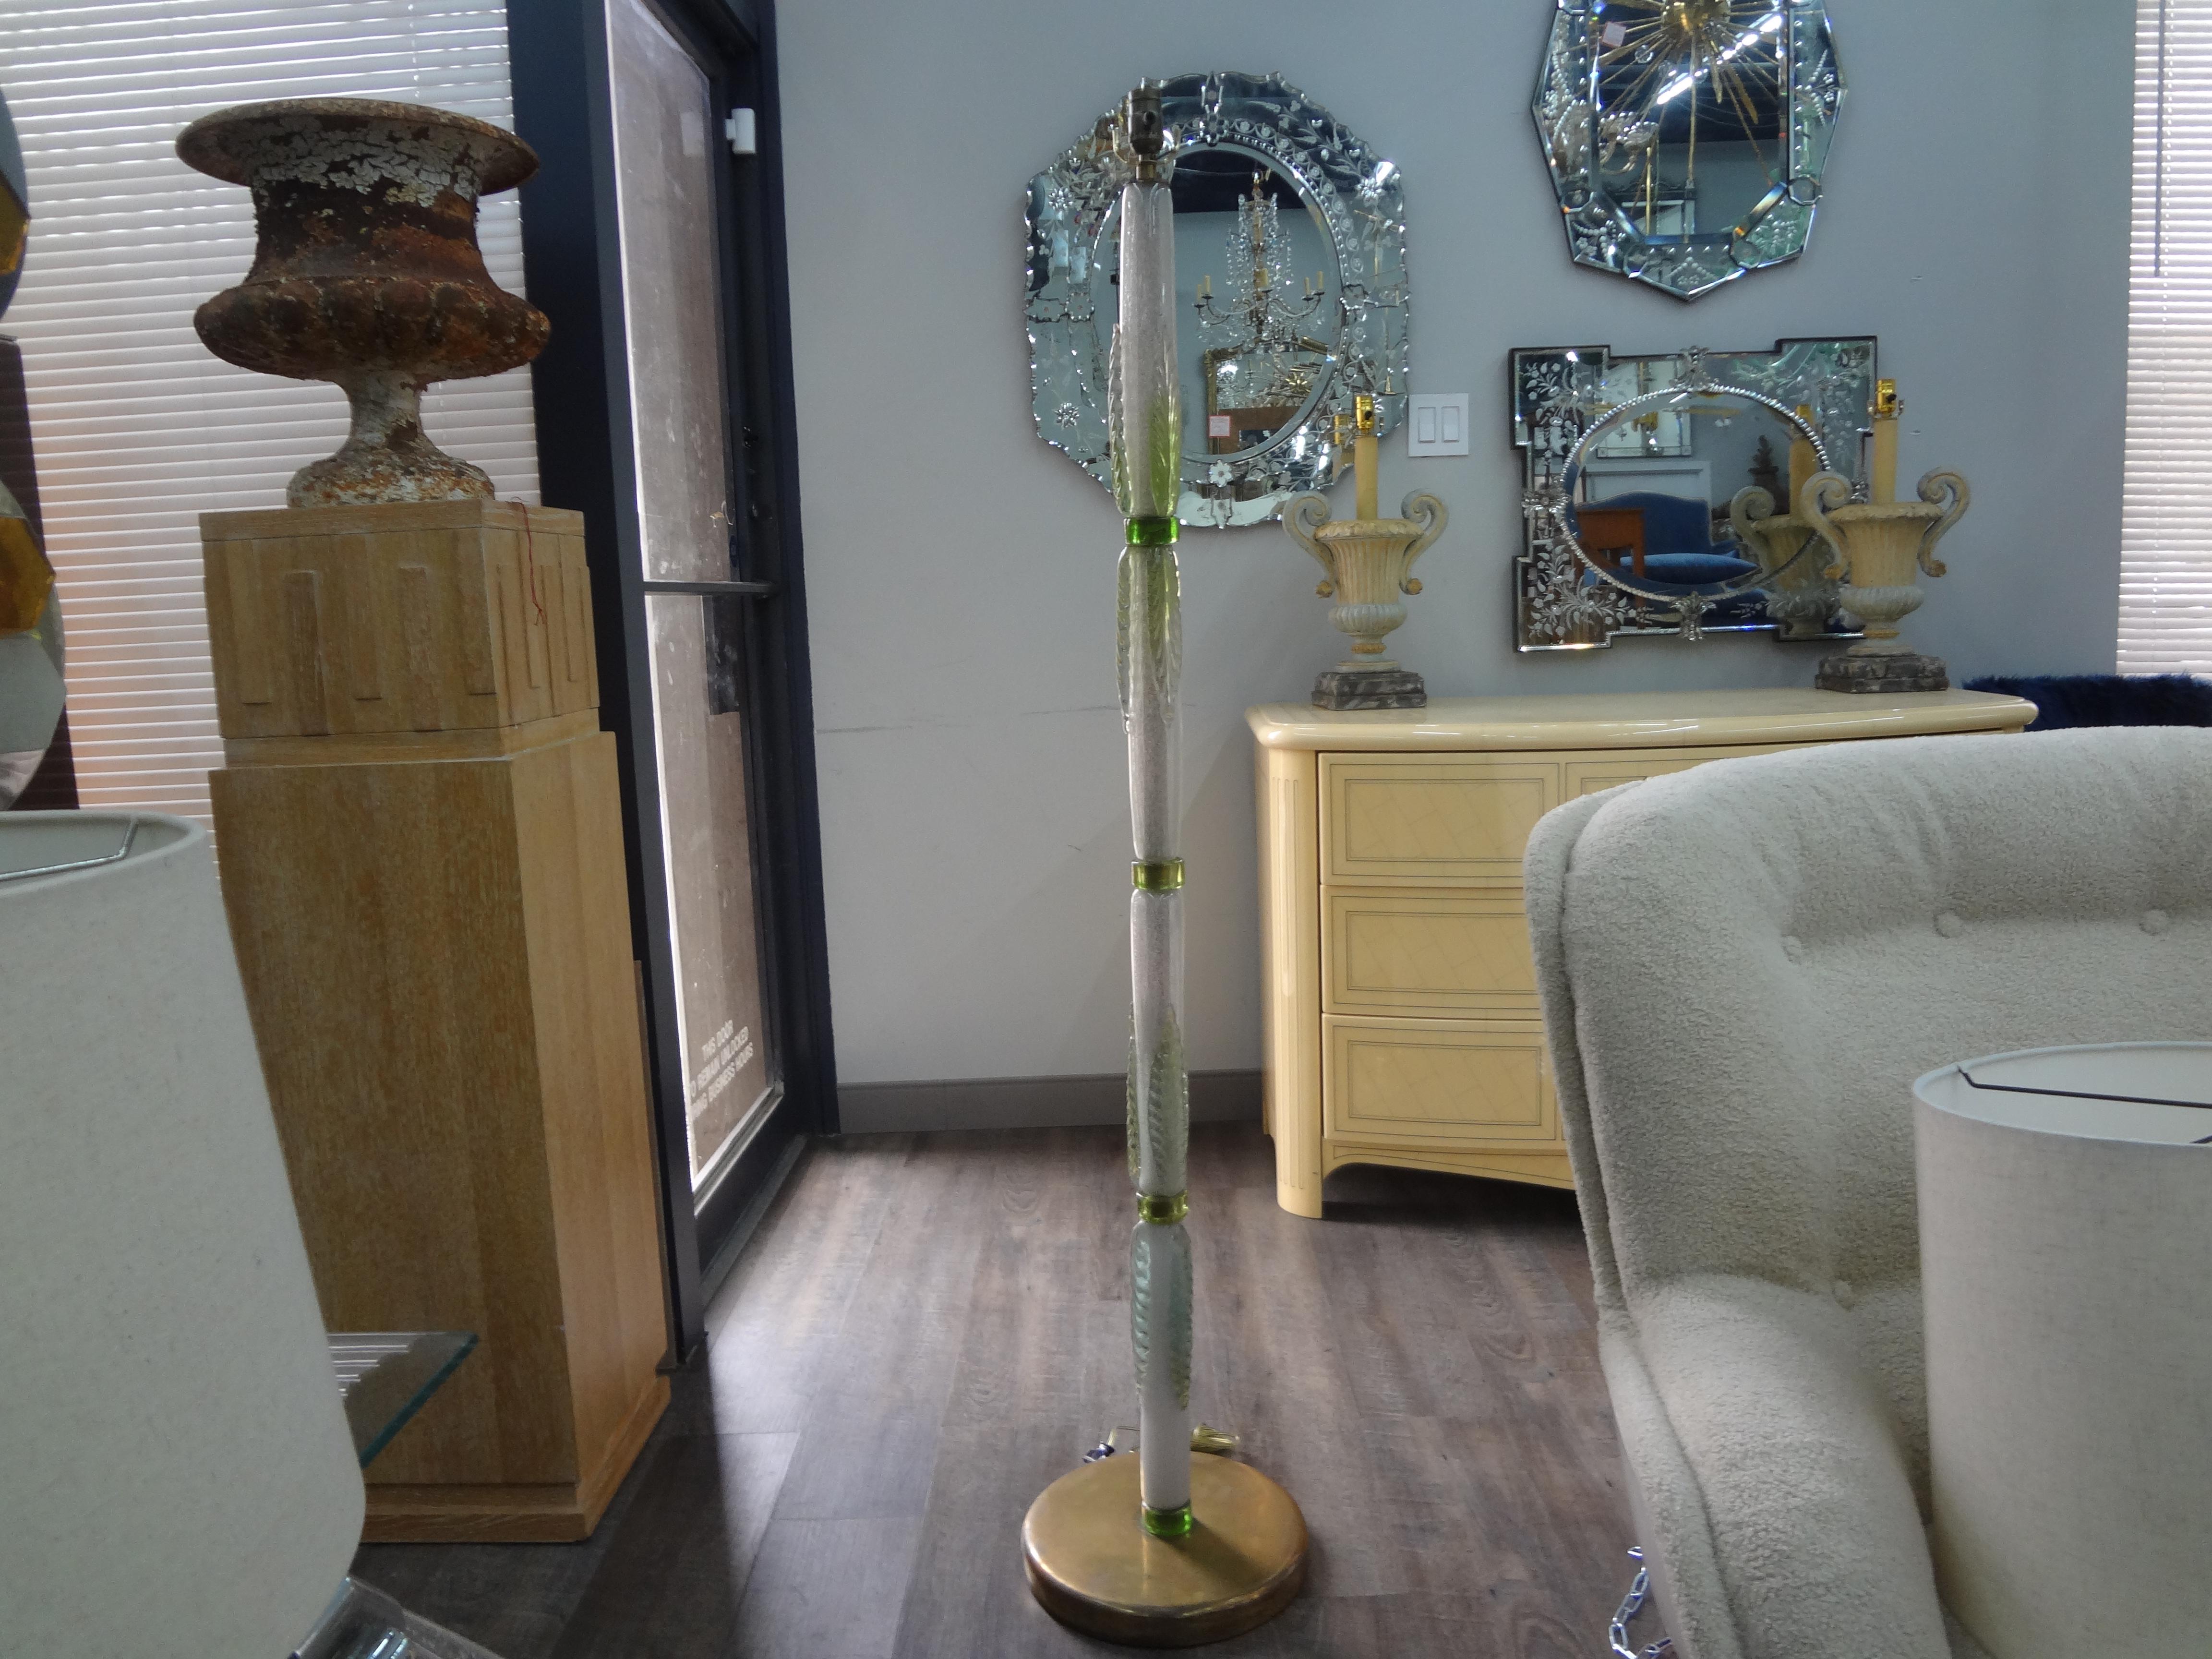 Lampadaire en verre Murano du milieu du siècle.
Joli lampadaire moderne du milieu du siècle dernier en verre de Murano soufflé à la main dans des tons verts et blancs, monté sur une base en laiton. Ce lampadaire inhabituel a été nouvellement câblé